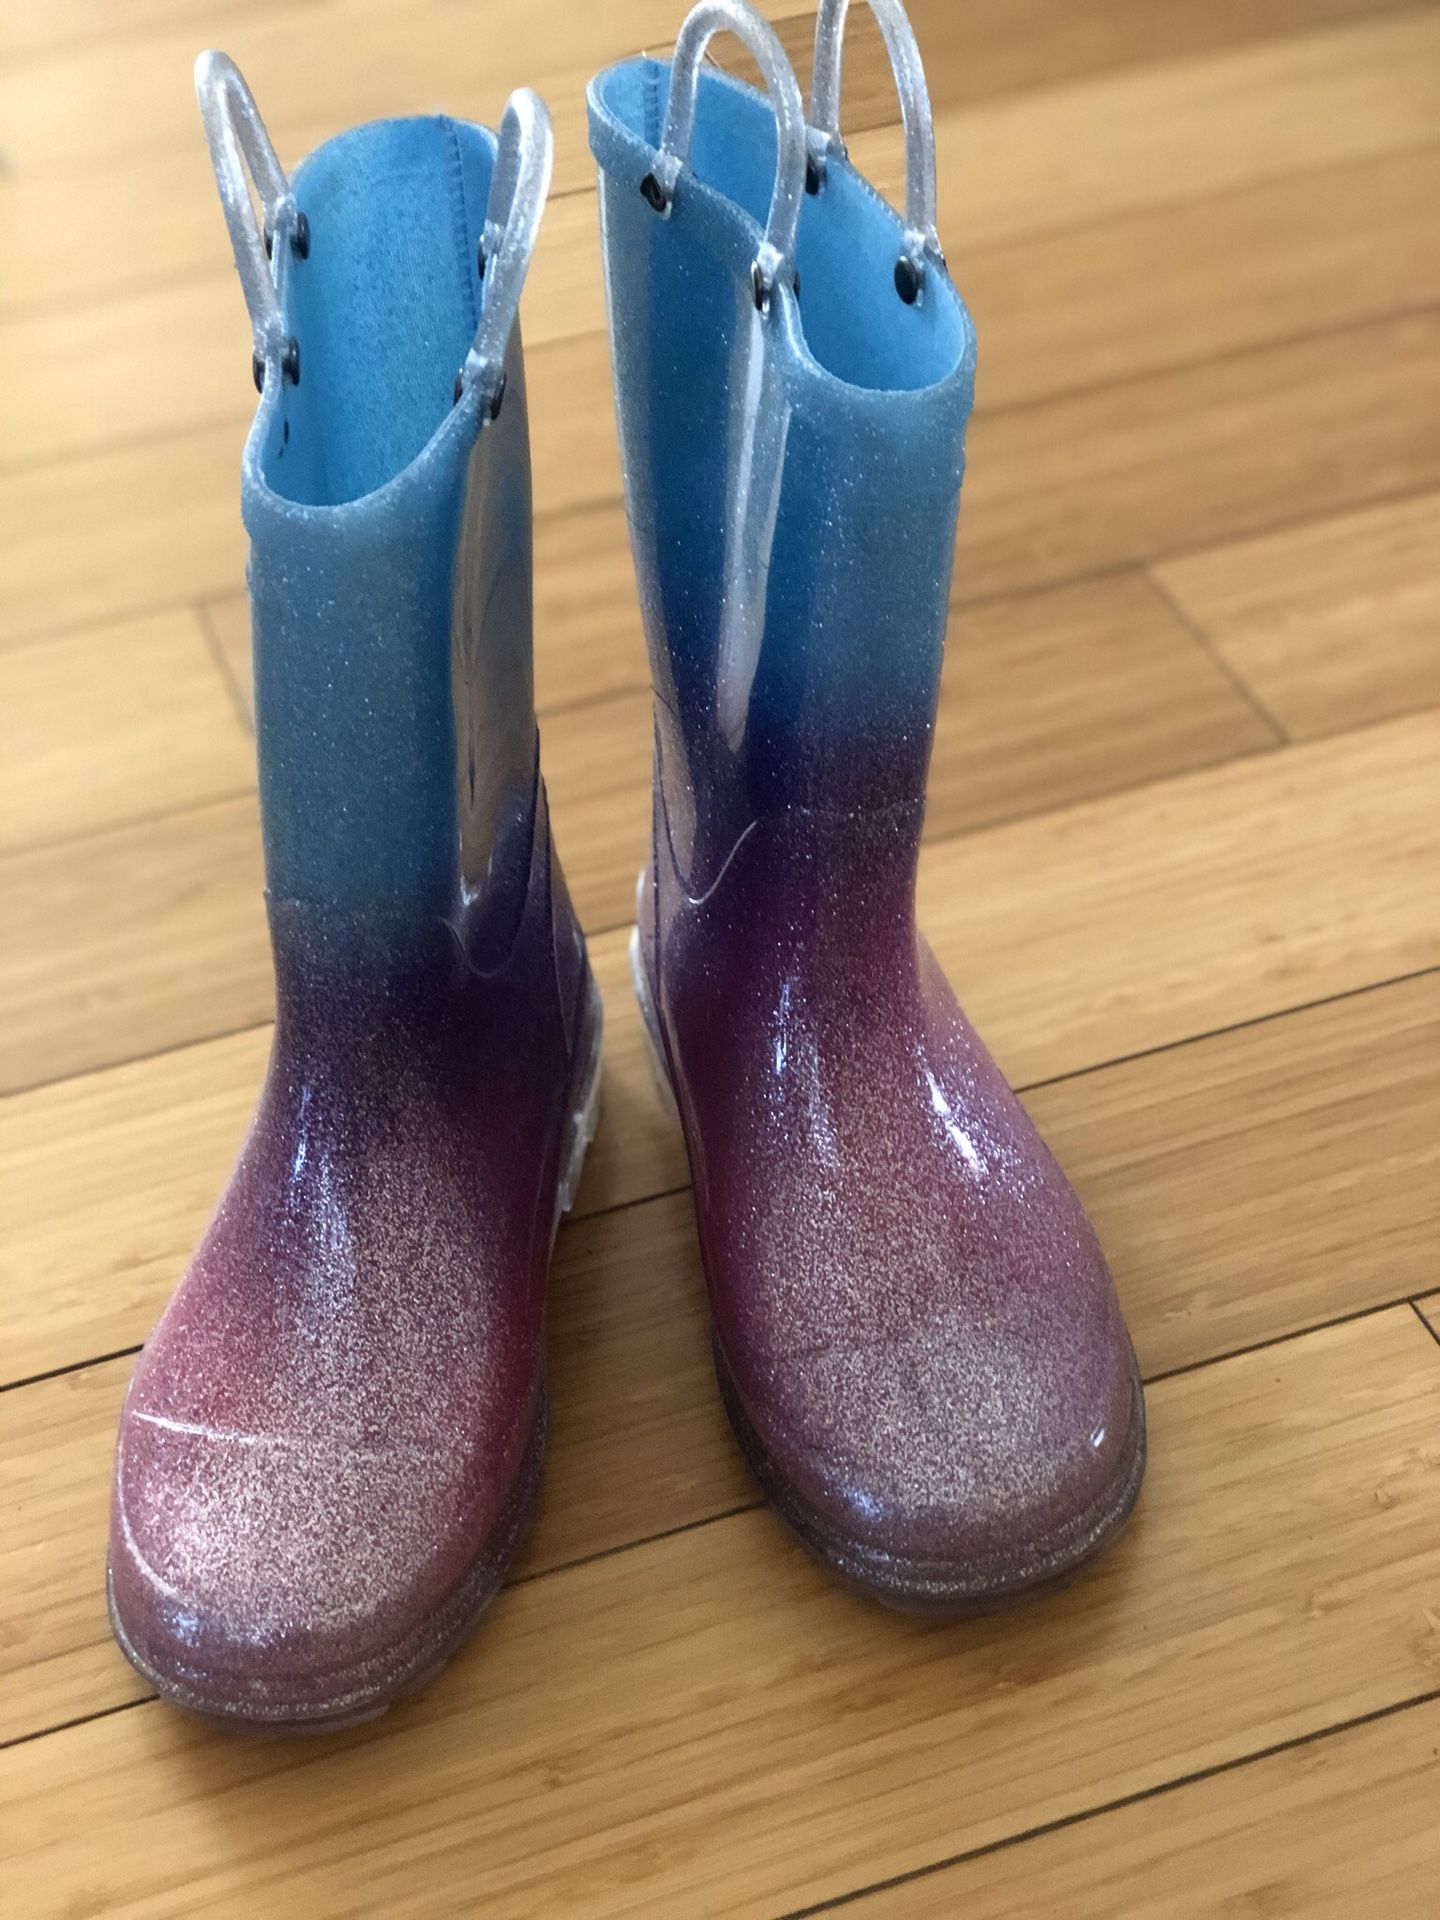 Girls light up rain boots